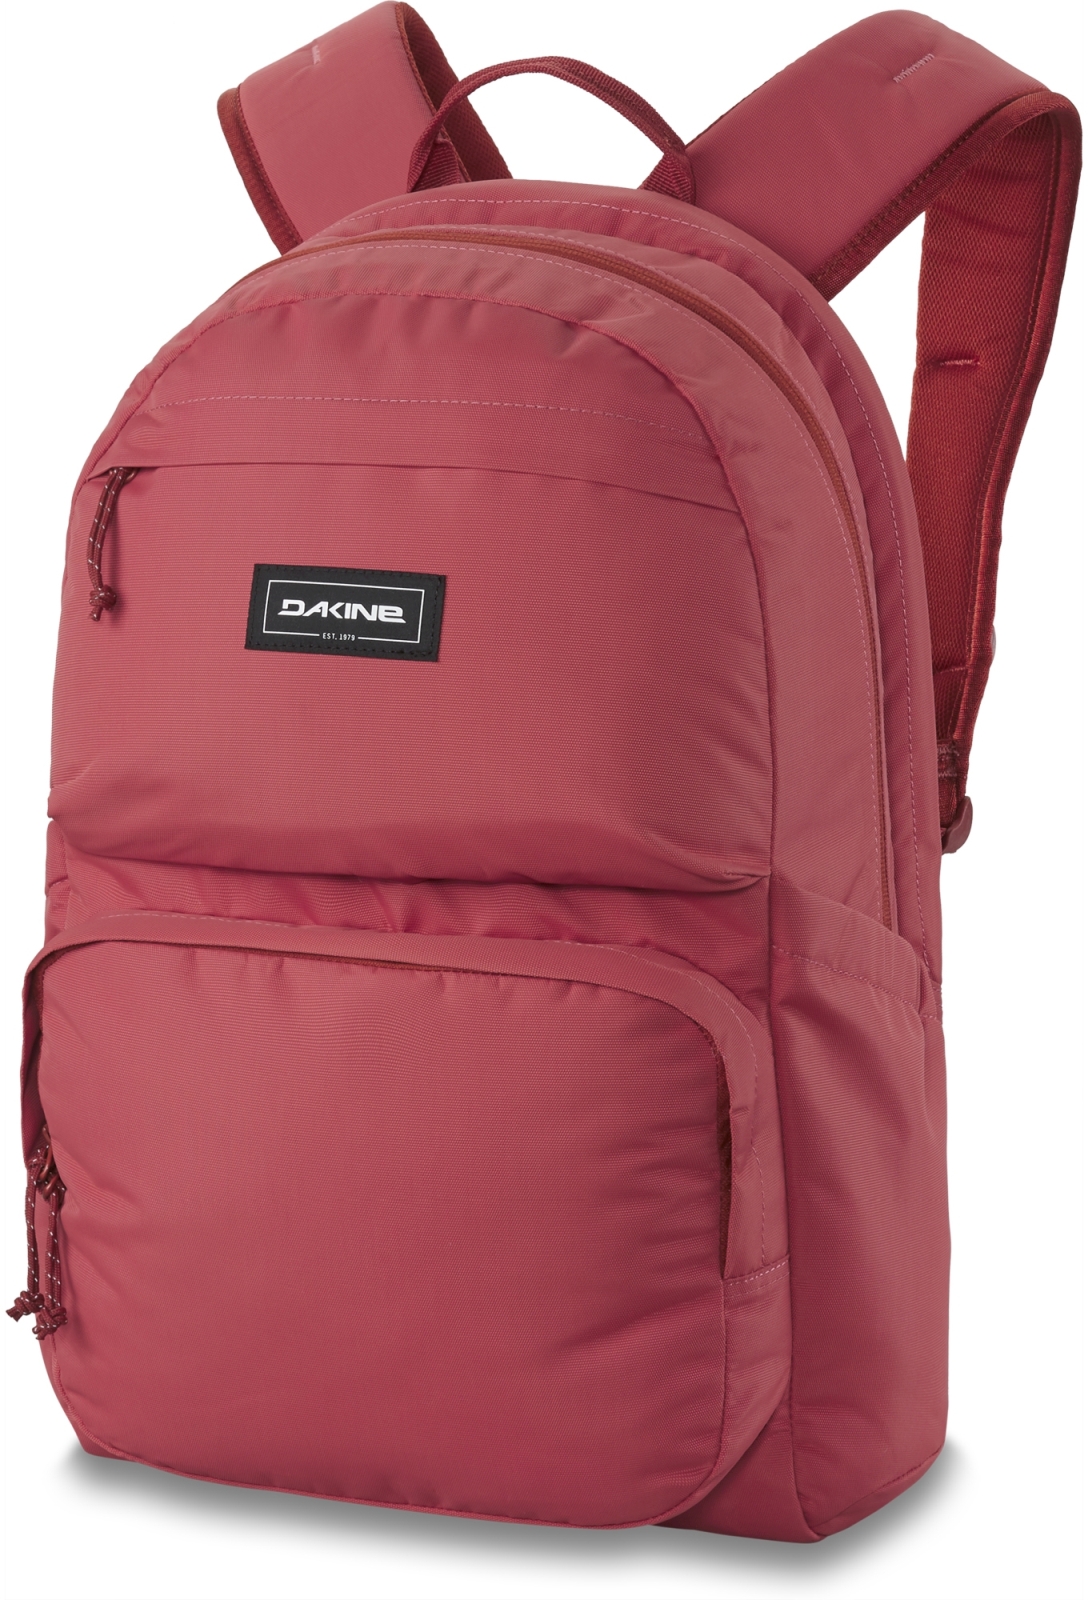 Dakine Method Backpack 25L - mineral red